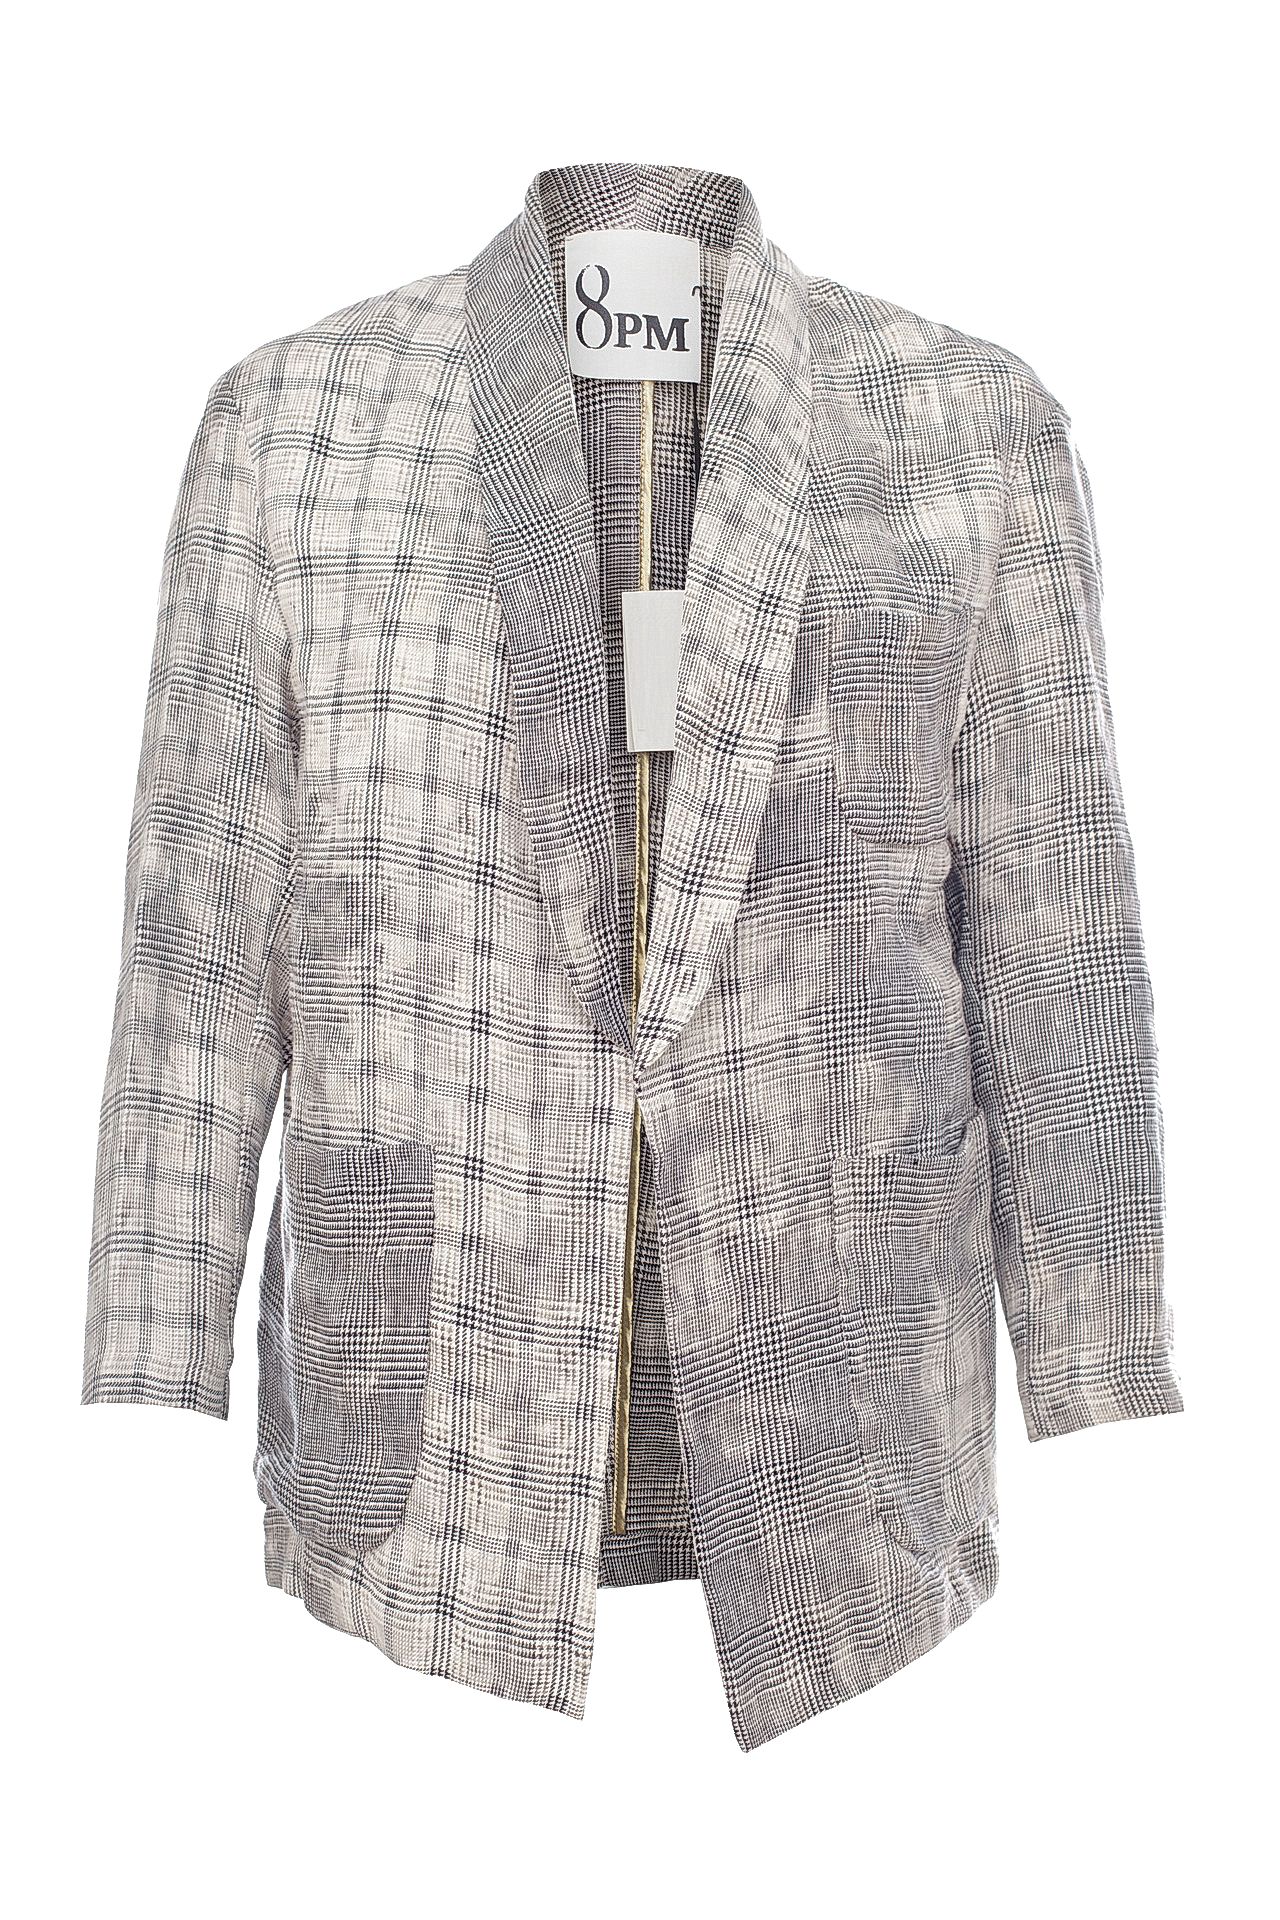 Одежда женская Пиджак 8PM (8PM71K157/17.2). Купить за 11450 руб.